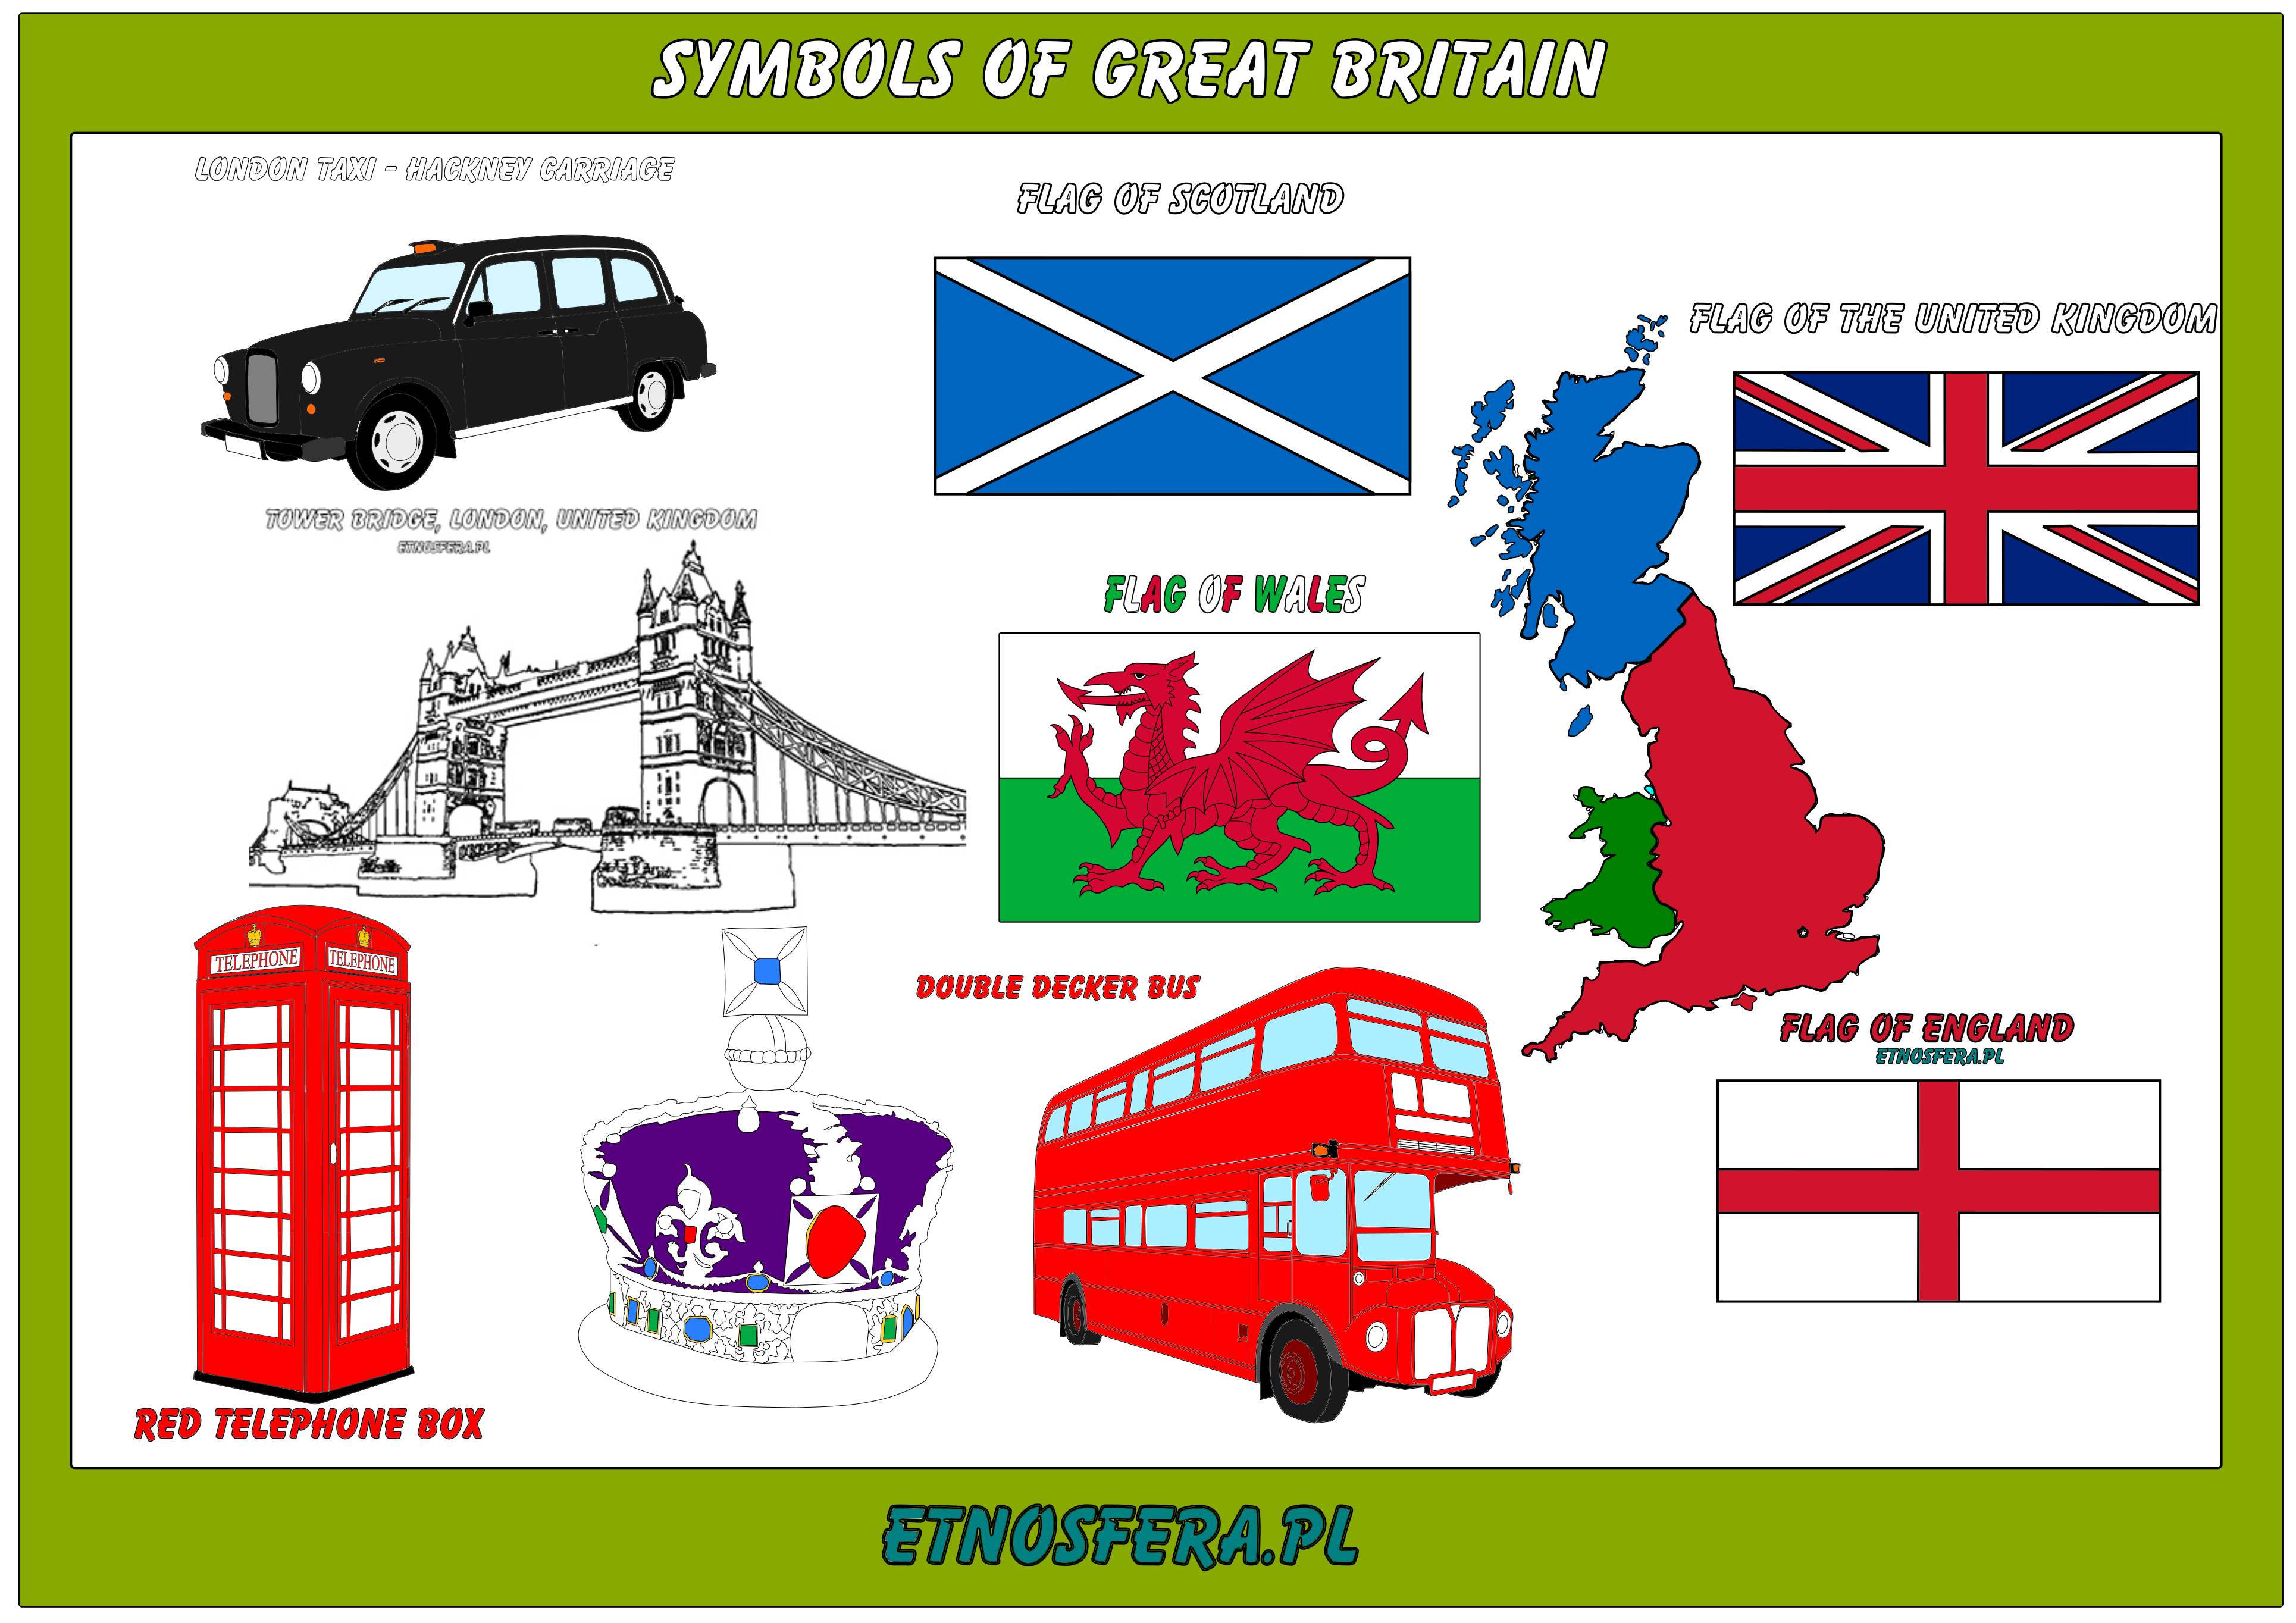 Symbols of Great Britain